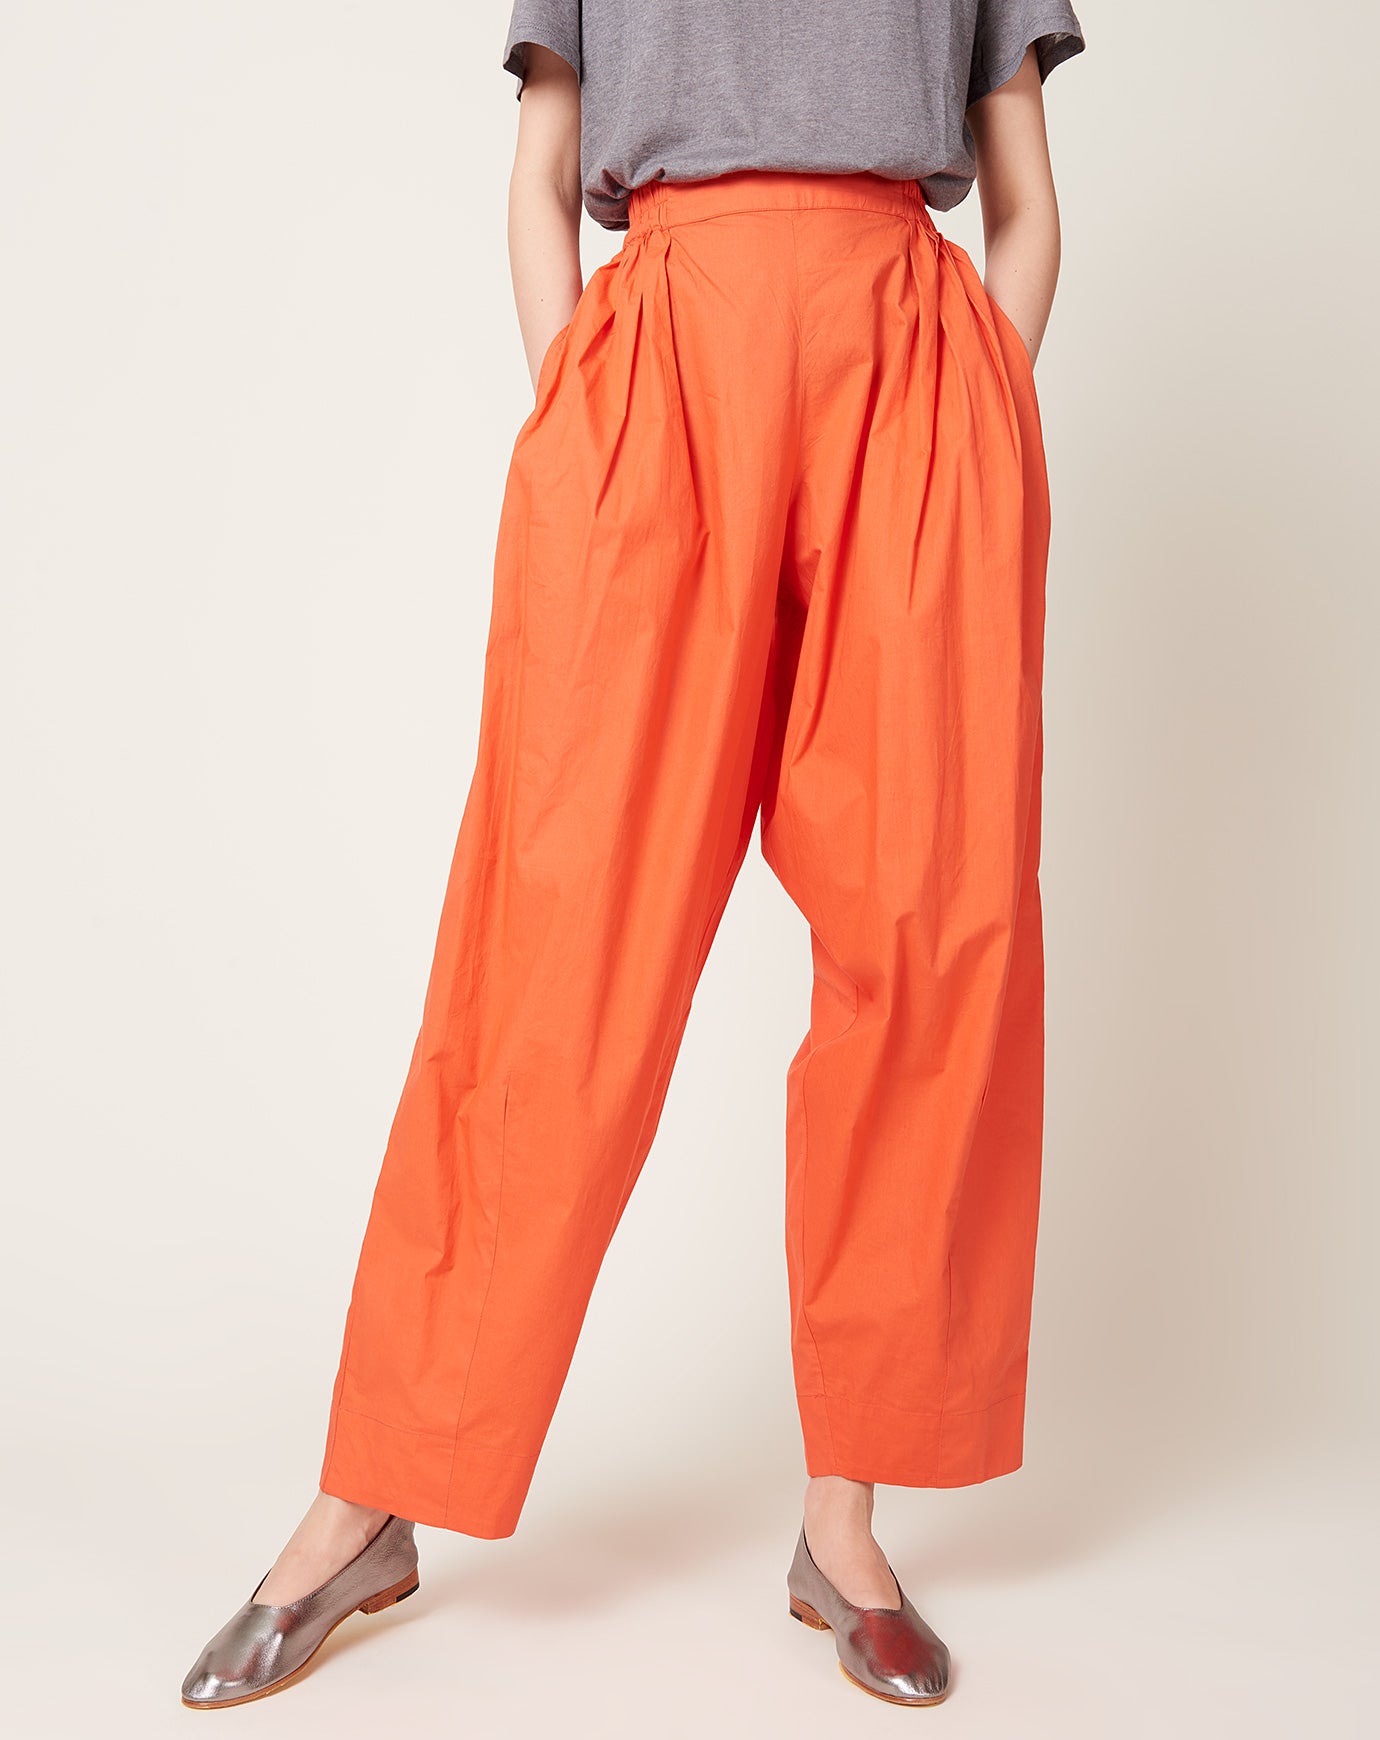 Anaak Jai Pleated Pants in Rouge Orange